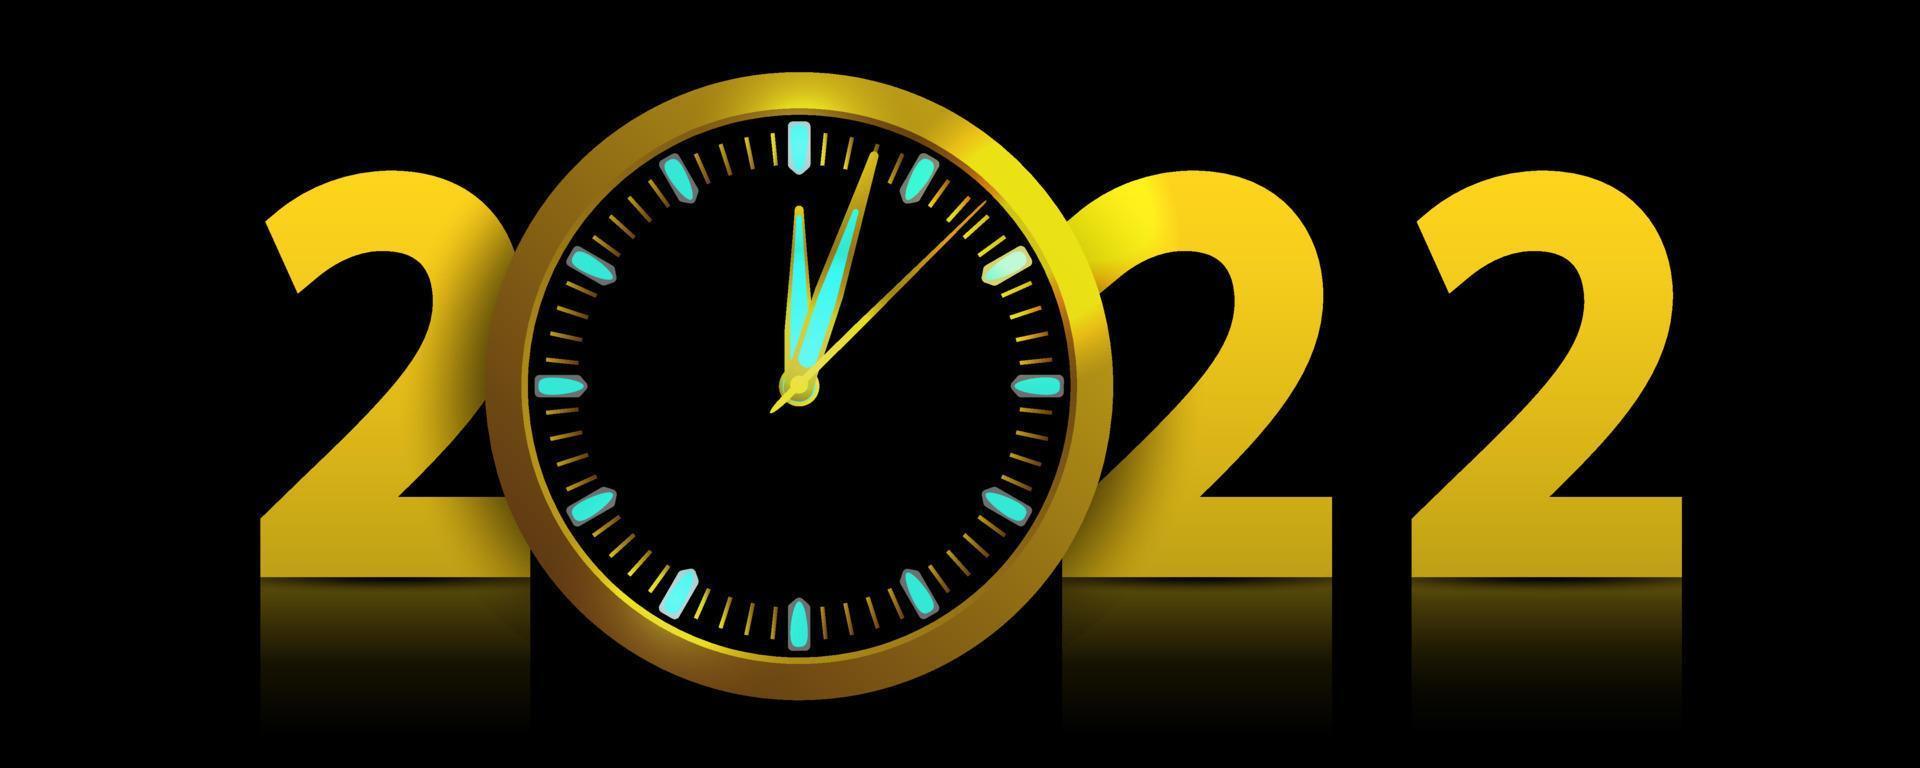 Frohes neues Jahr 2022 mit einer Uhr mit Dämmerungszeit des neuen Jahres. vektor